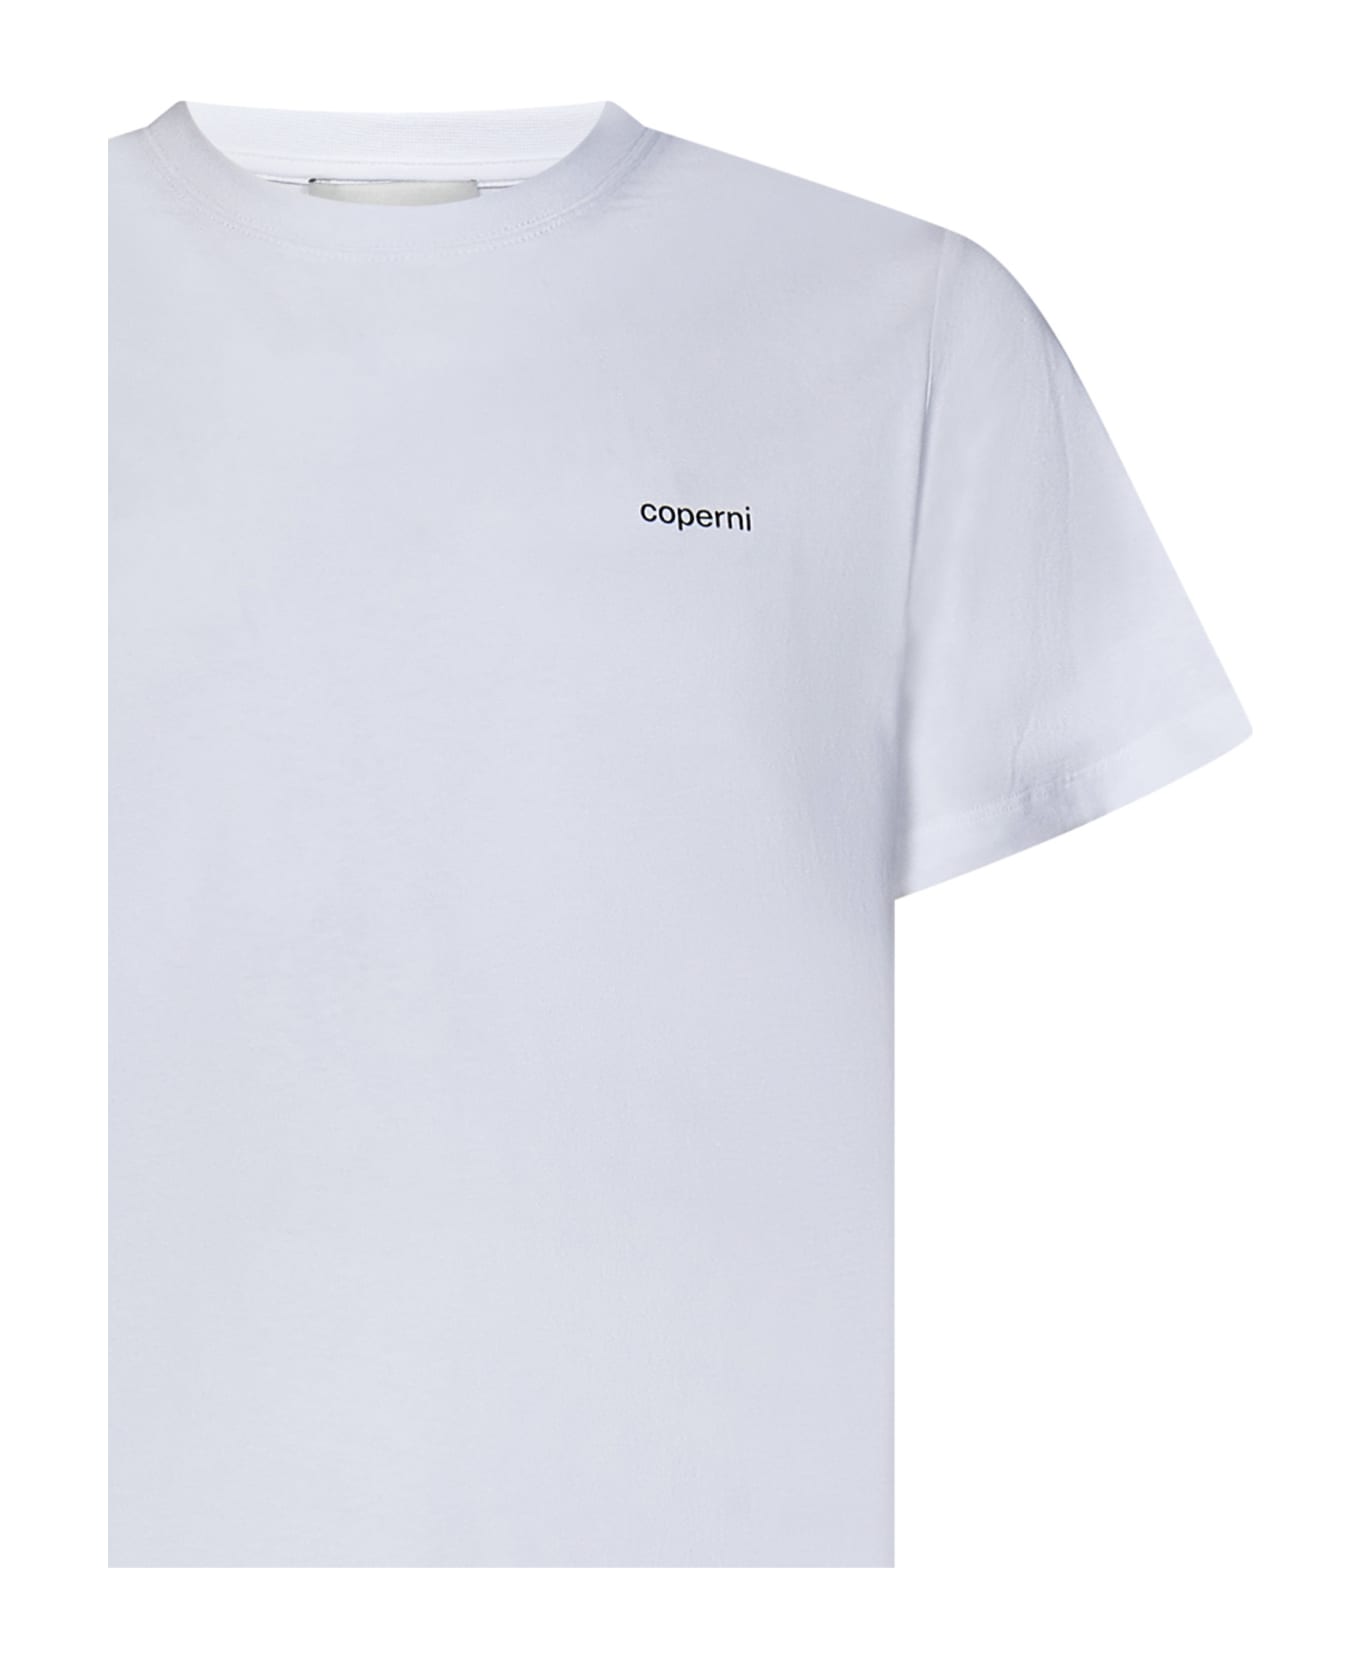 Coperni T-shirt - WHITE シャツ